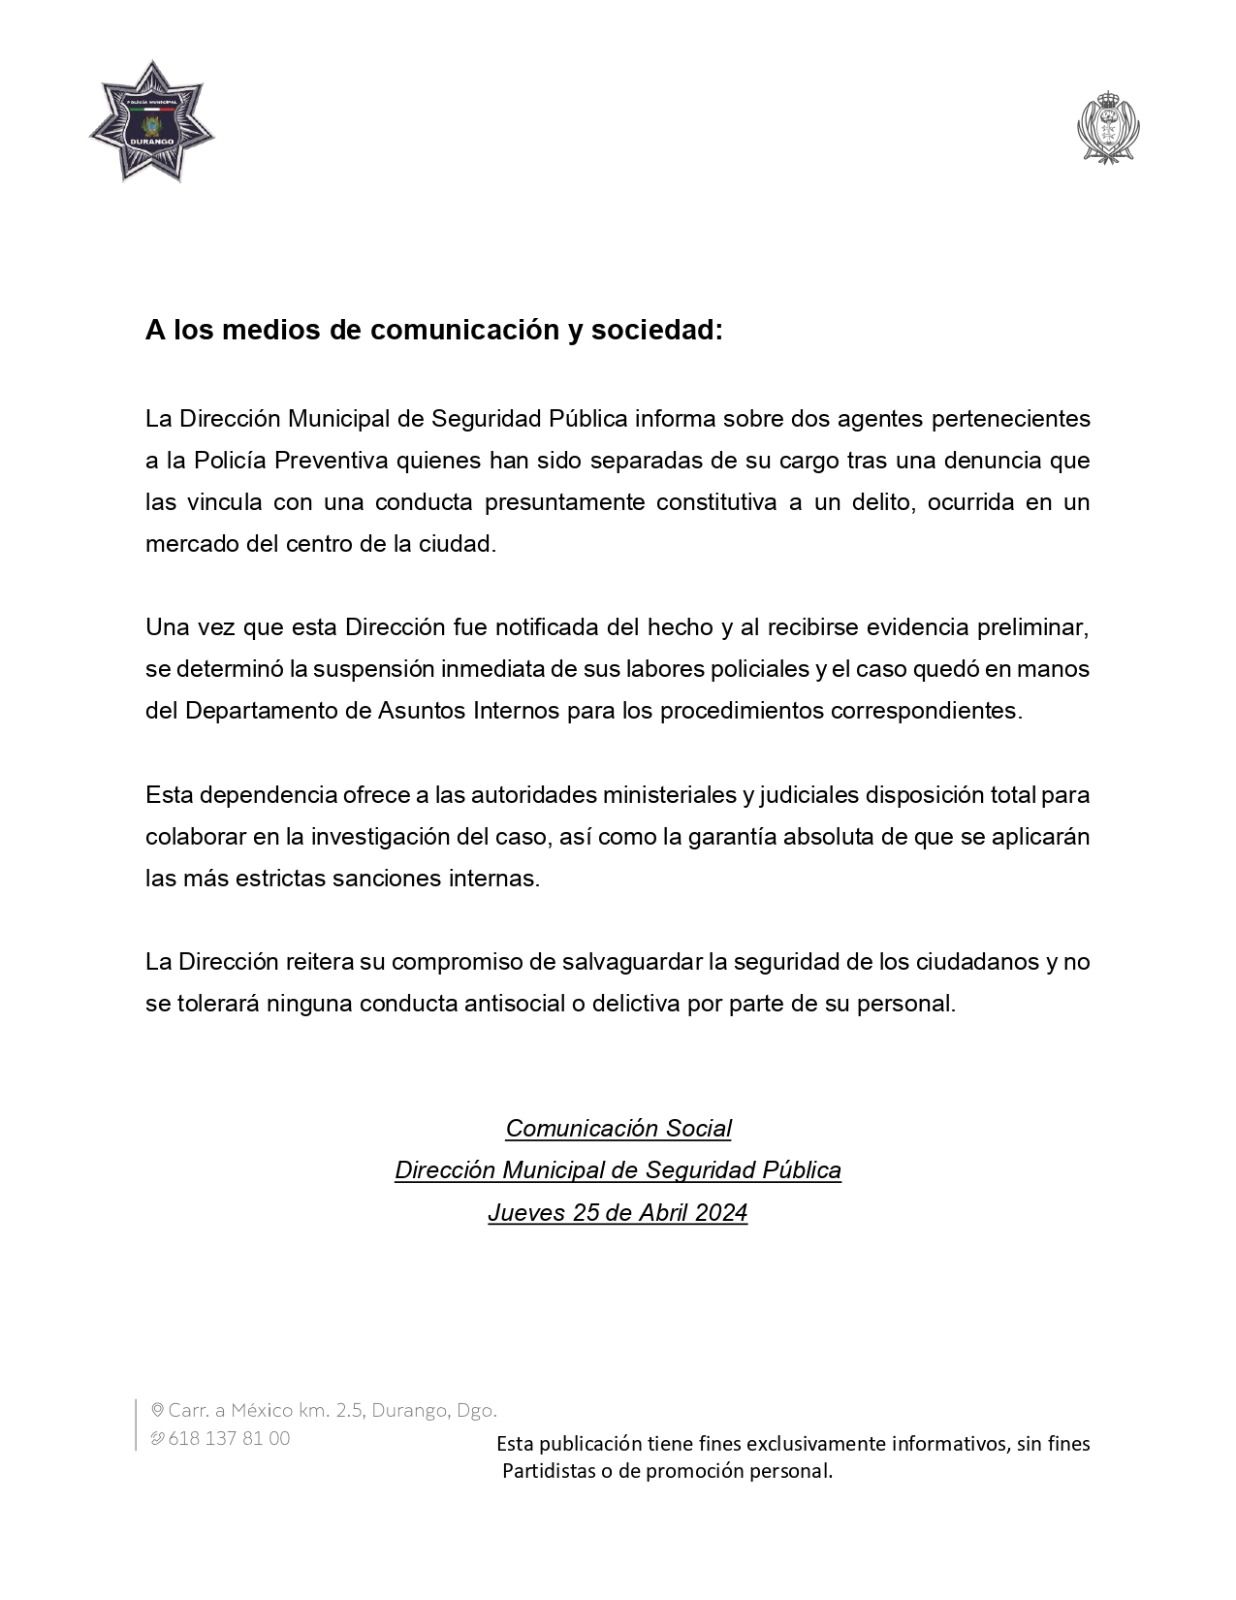 La dirección municipal de Seguridad Pública envió un comunicado en donde informaba sobre la separación del cargo de dos policías municipales por un hecho ocurrido en el Mercado Gómez Palacio